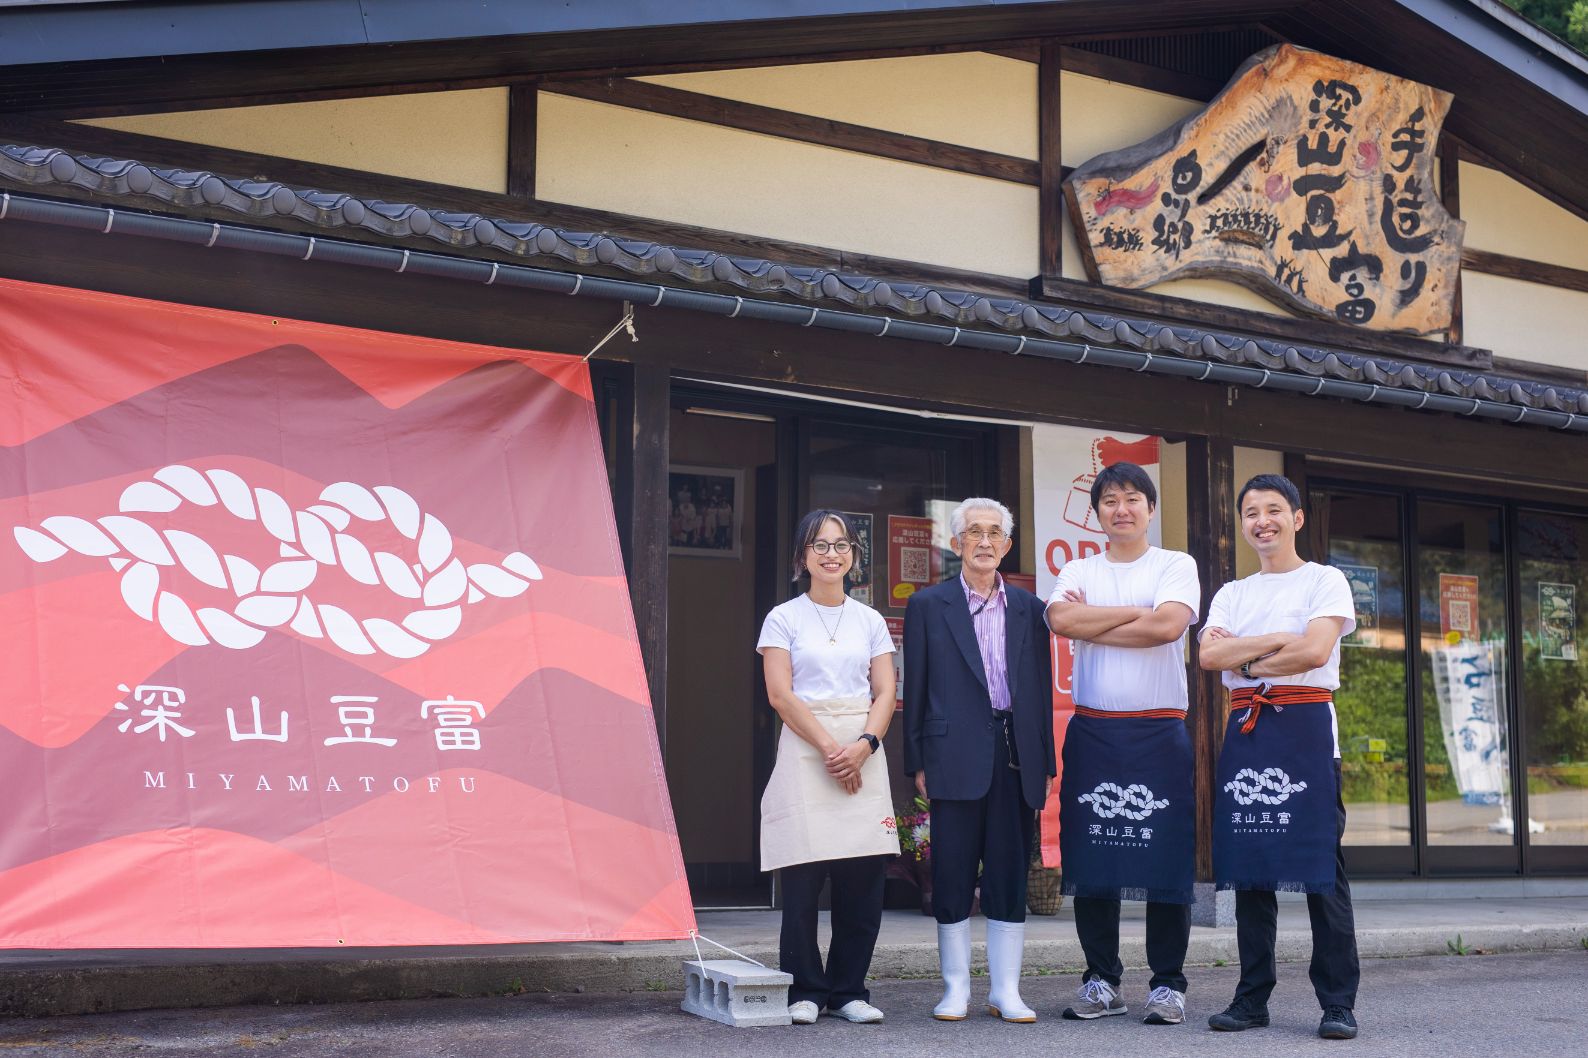 地元に愛される豆腐店の閉店を聞き、第三者承継を決意